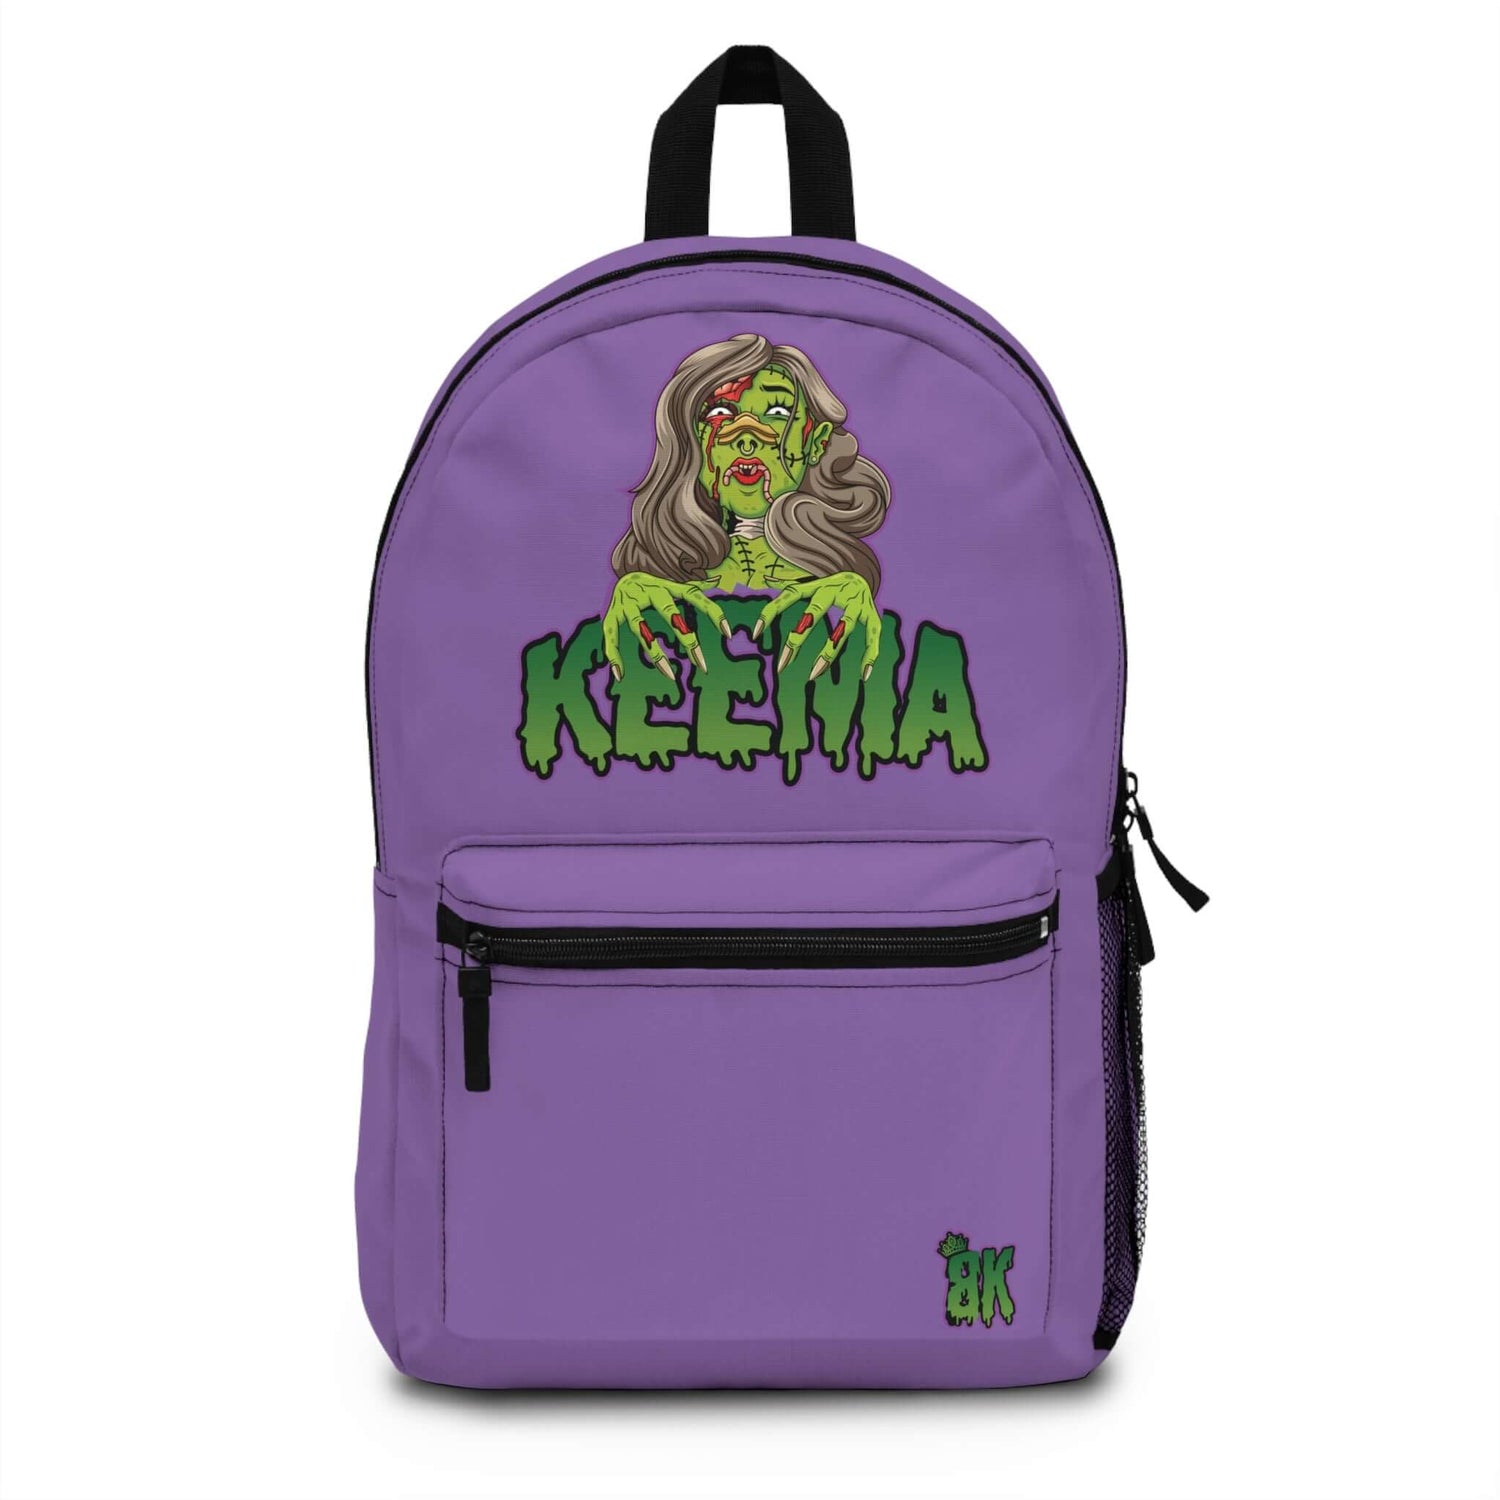 Limited Edison Keema Backpack 